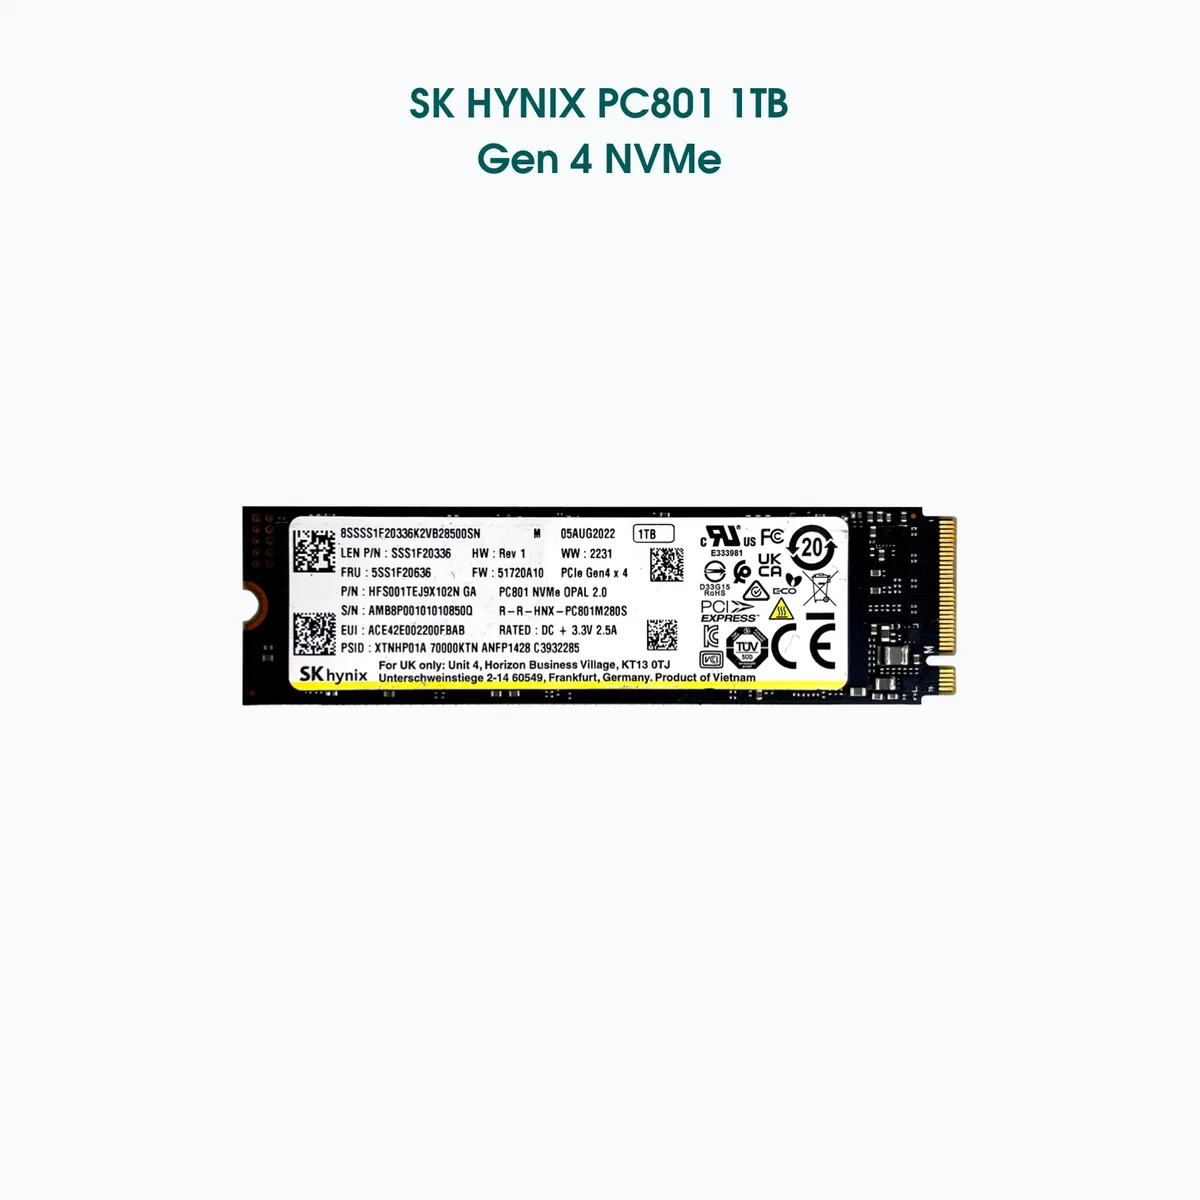 ほぼ新品 NVMe PCI 4.0 1TB SSD SKhynix PC801-